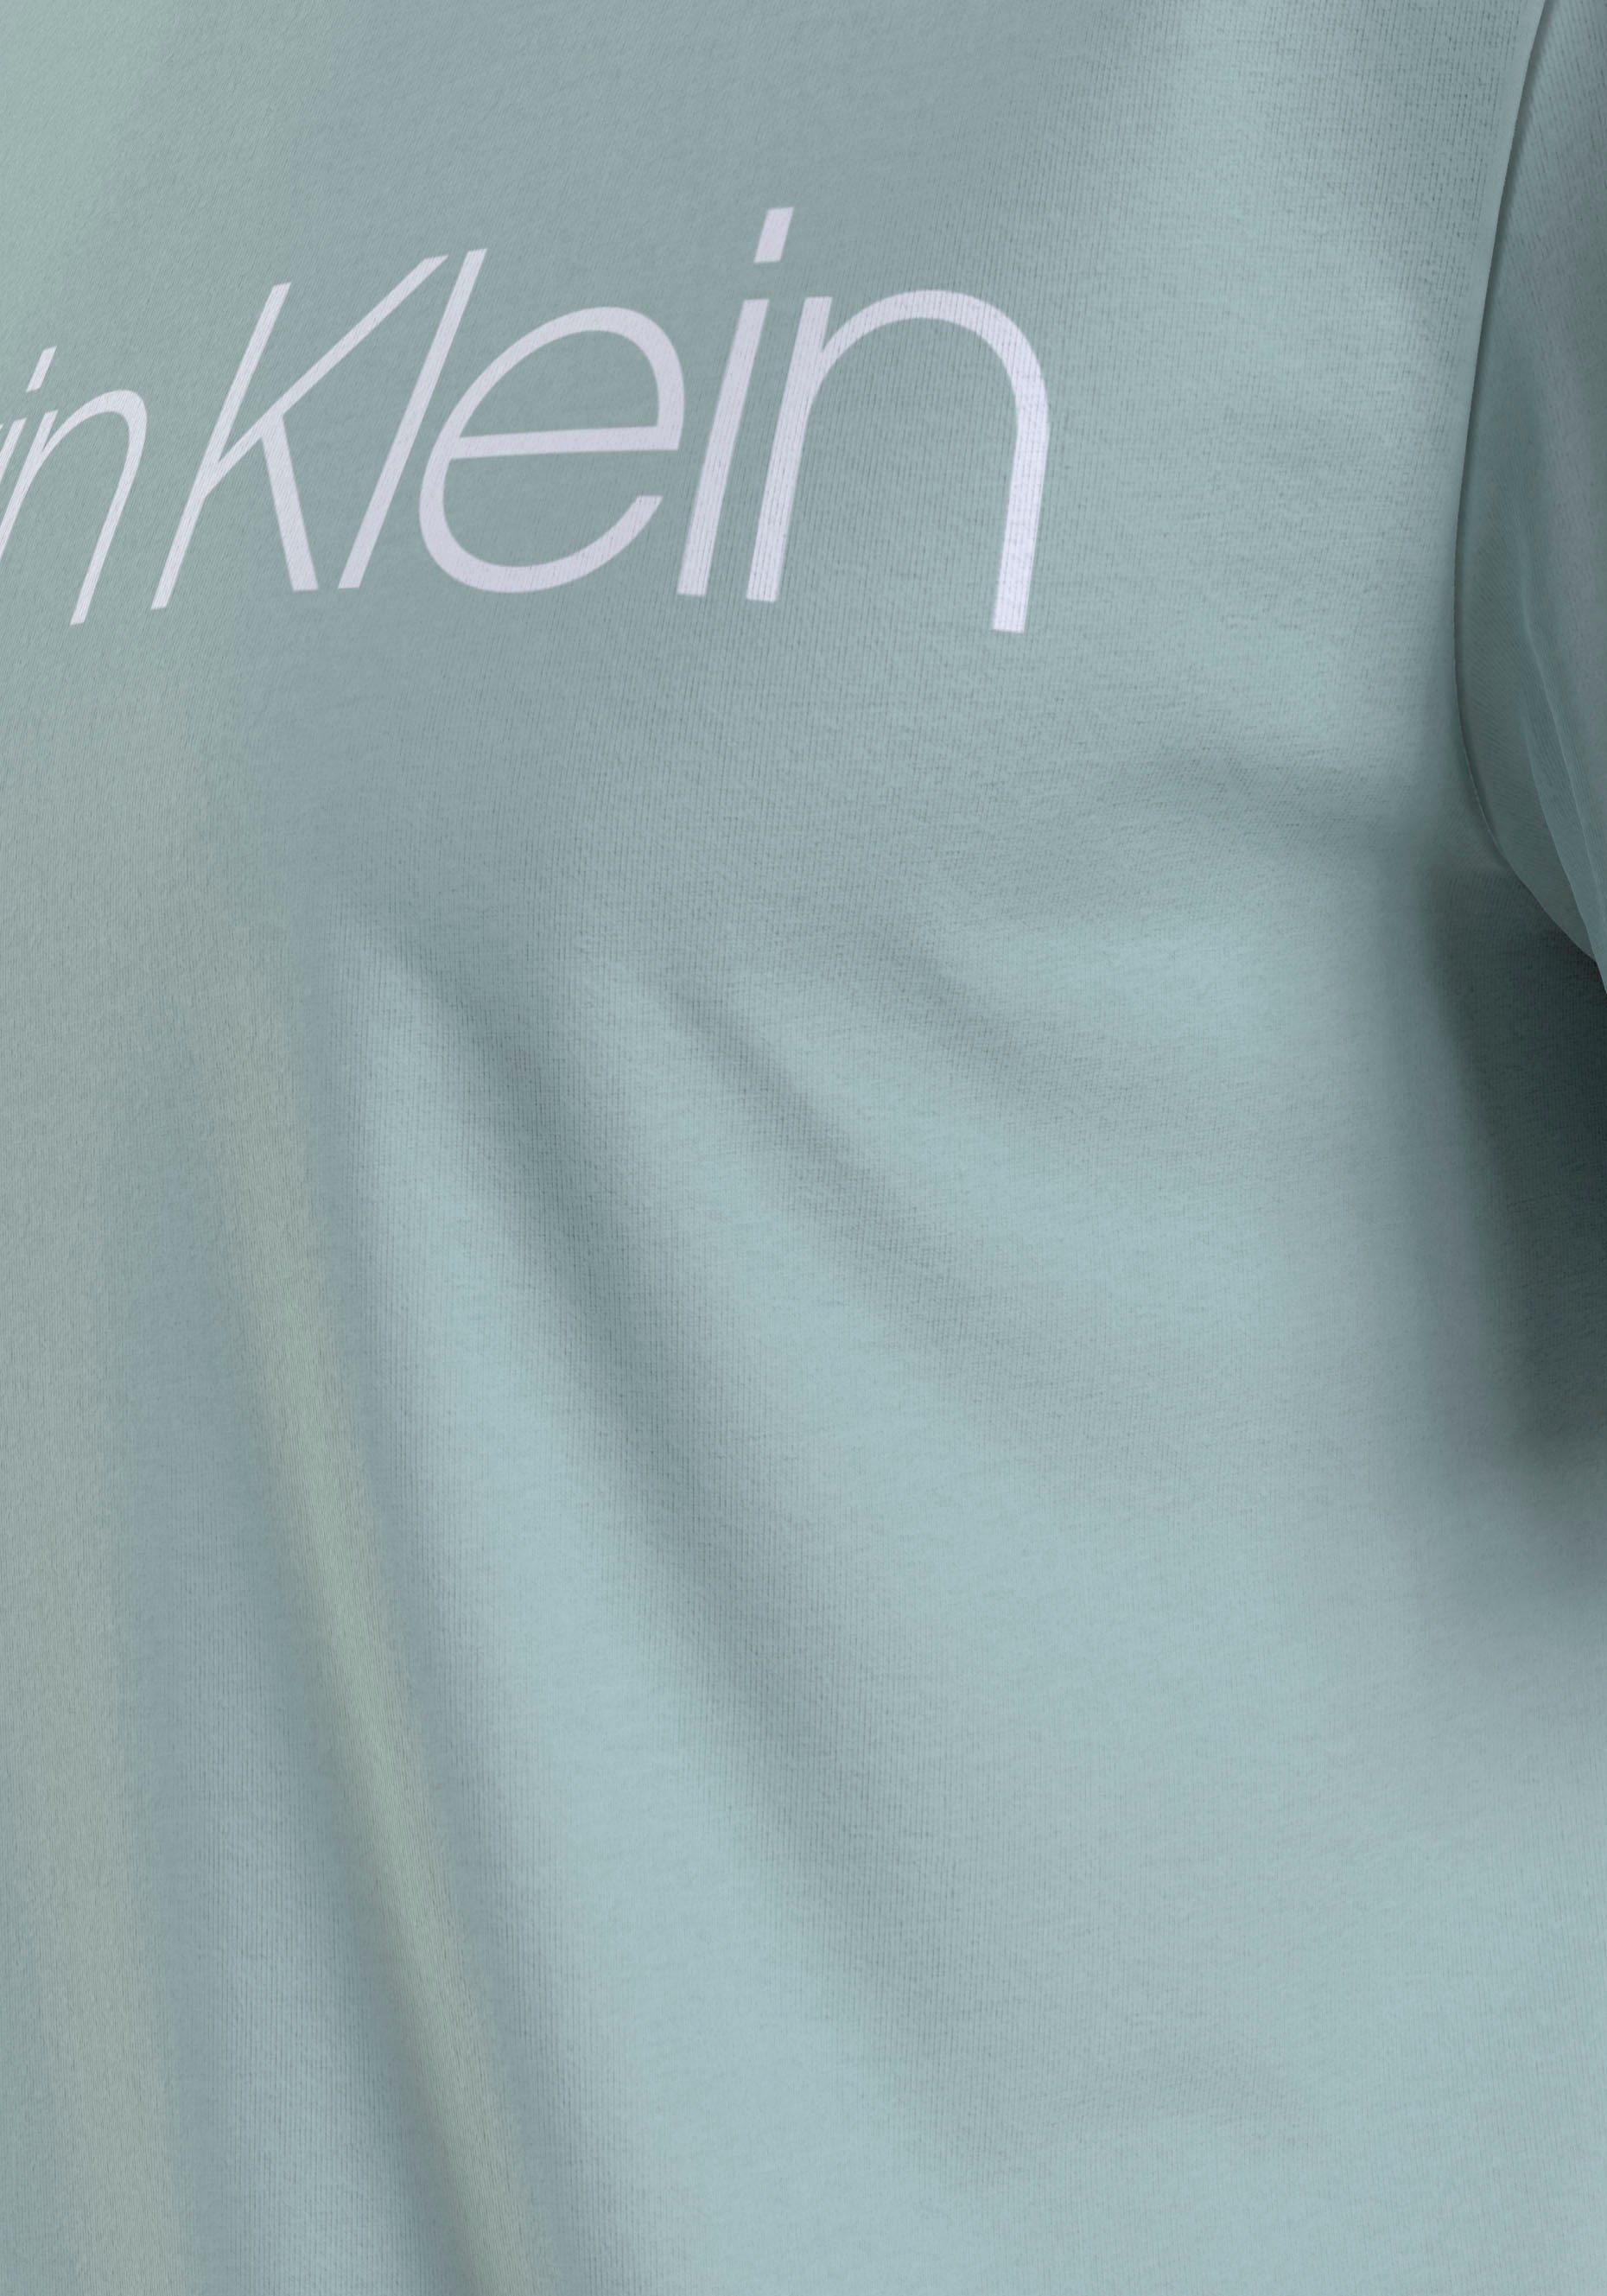 Calvin Klein ghost mit Klein COTTON Logodruck gl T-SHIRT T-Shirt LOGO Calvin FRONT